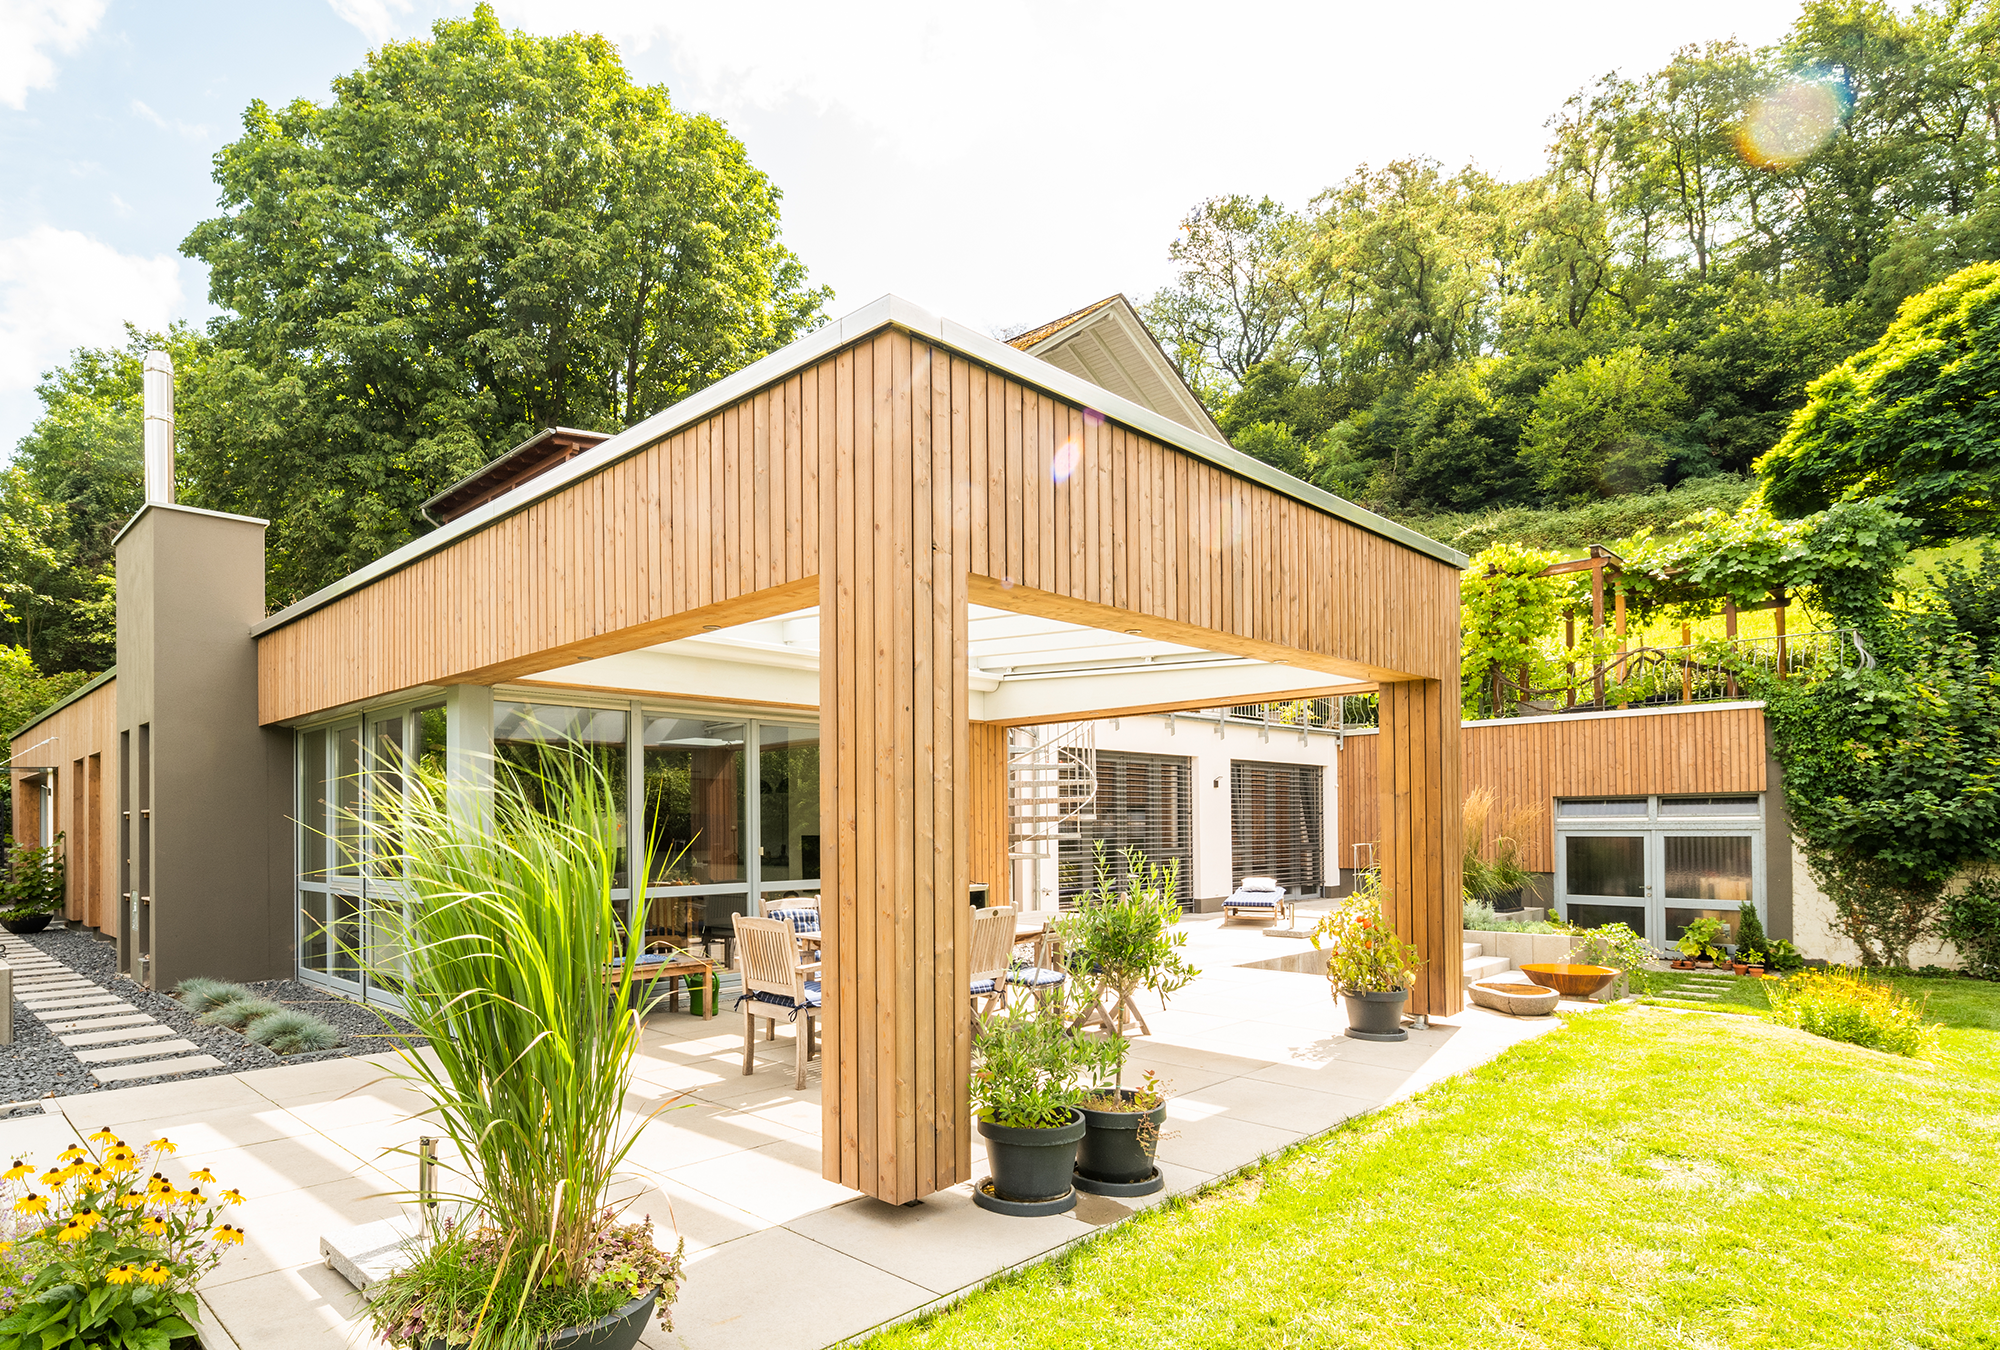 Anbau mit moderner Holzfassade für zusätzlichen Wohnraum und überdachte Terrasse